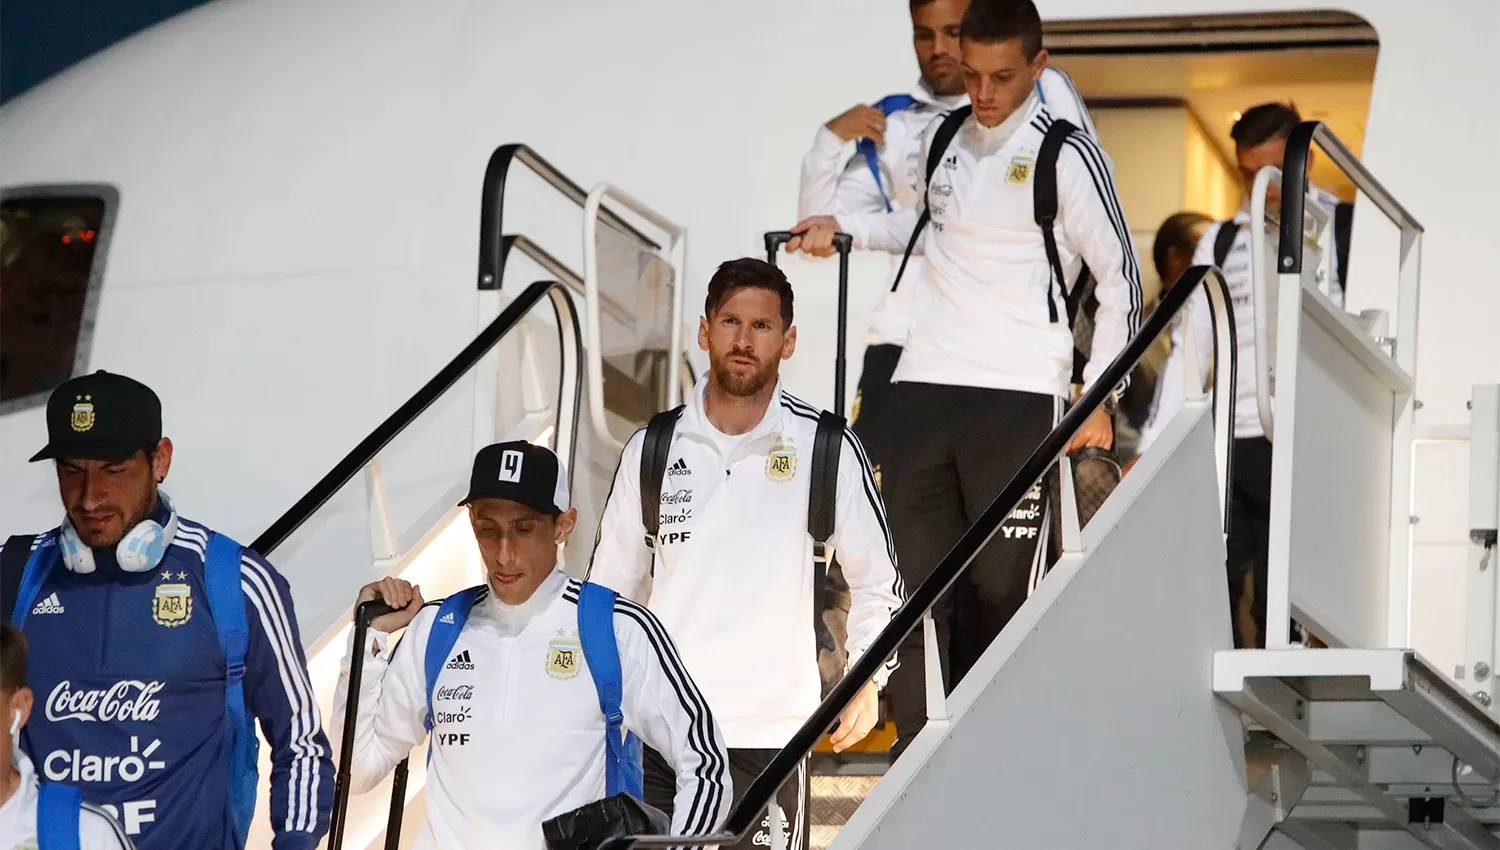 EN TIERRA. Messi y compañía ajustarán los detalles necesarios en Moscú de cara al debut del próximo sábado ante Islandia. REUTERS